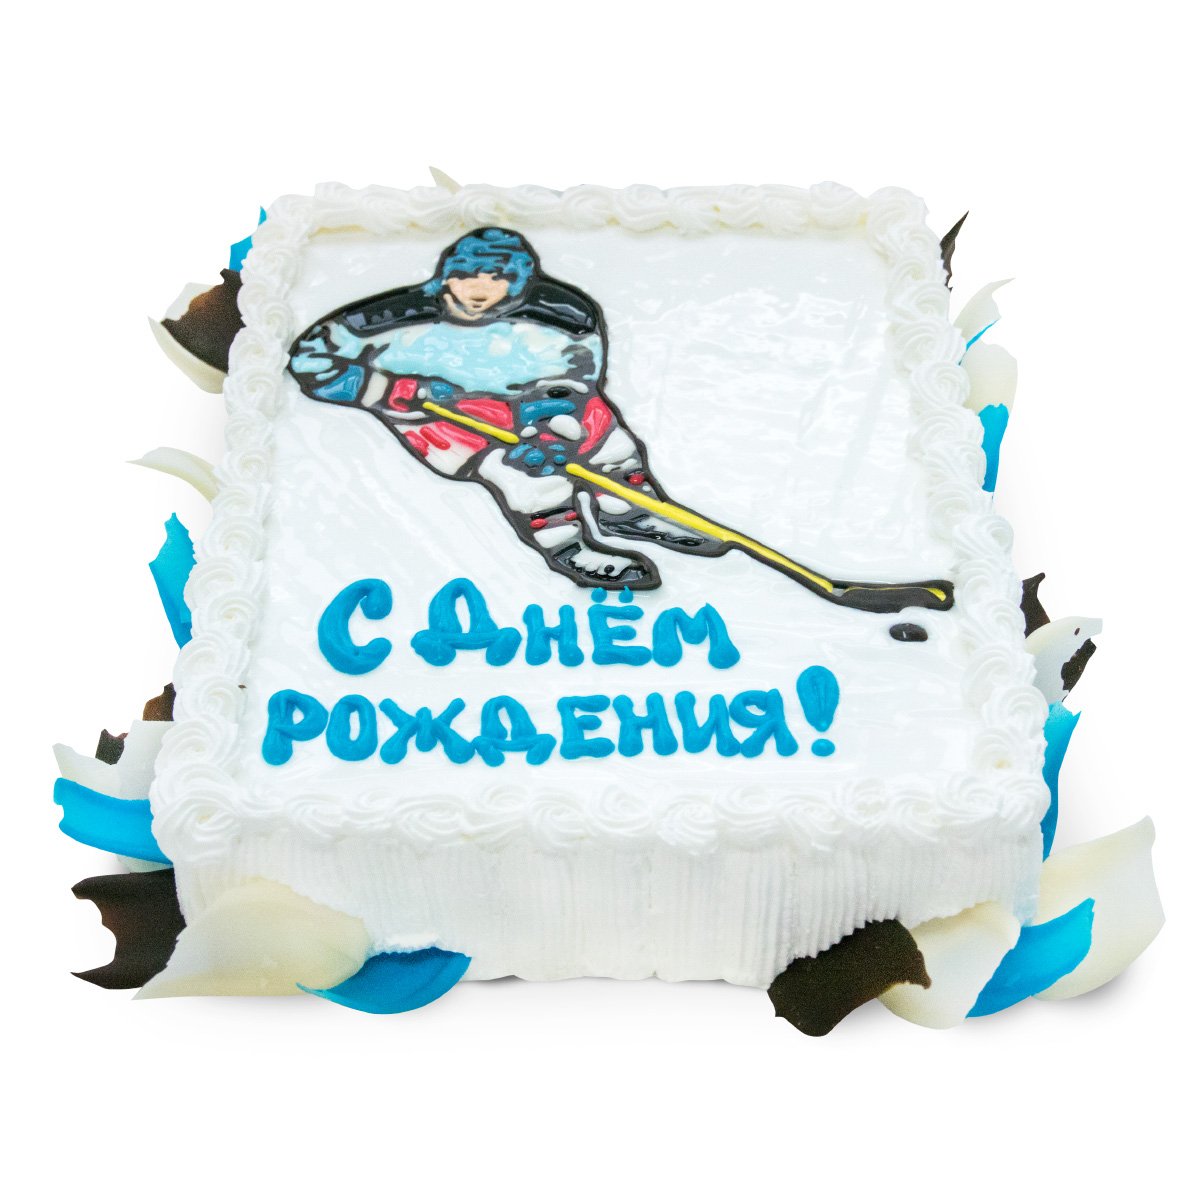 Поздравления с днем рождения хоккеисту